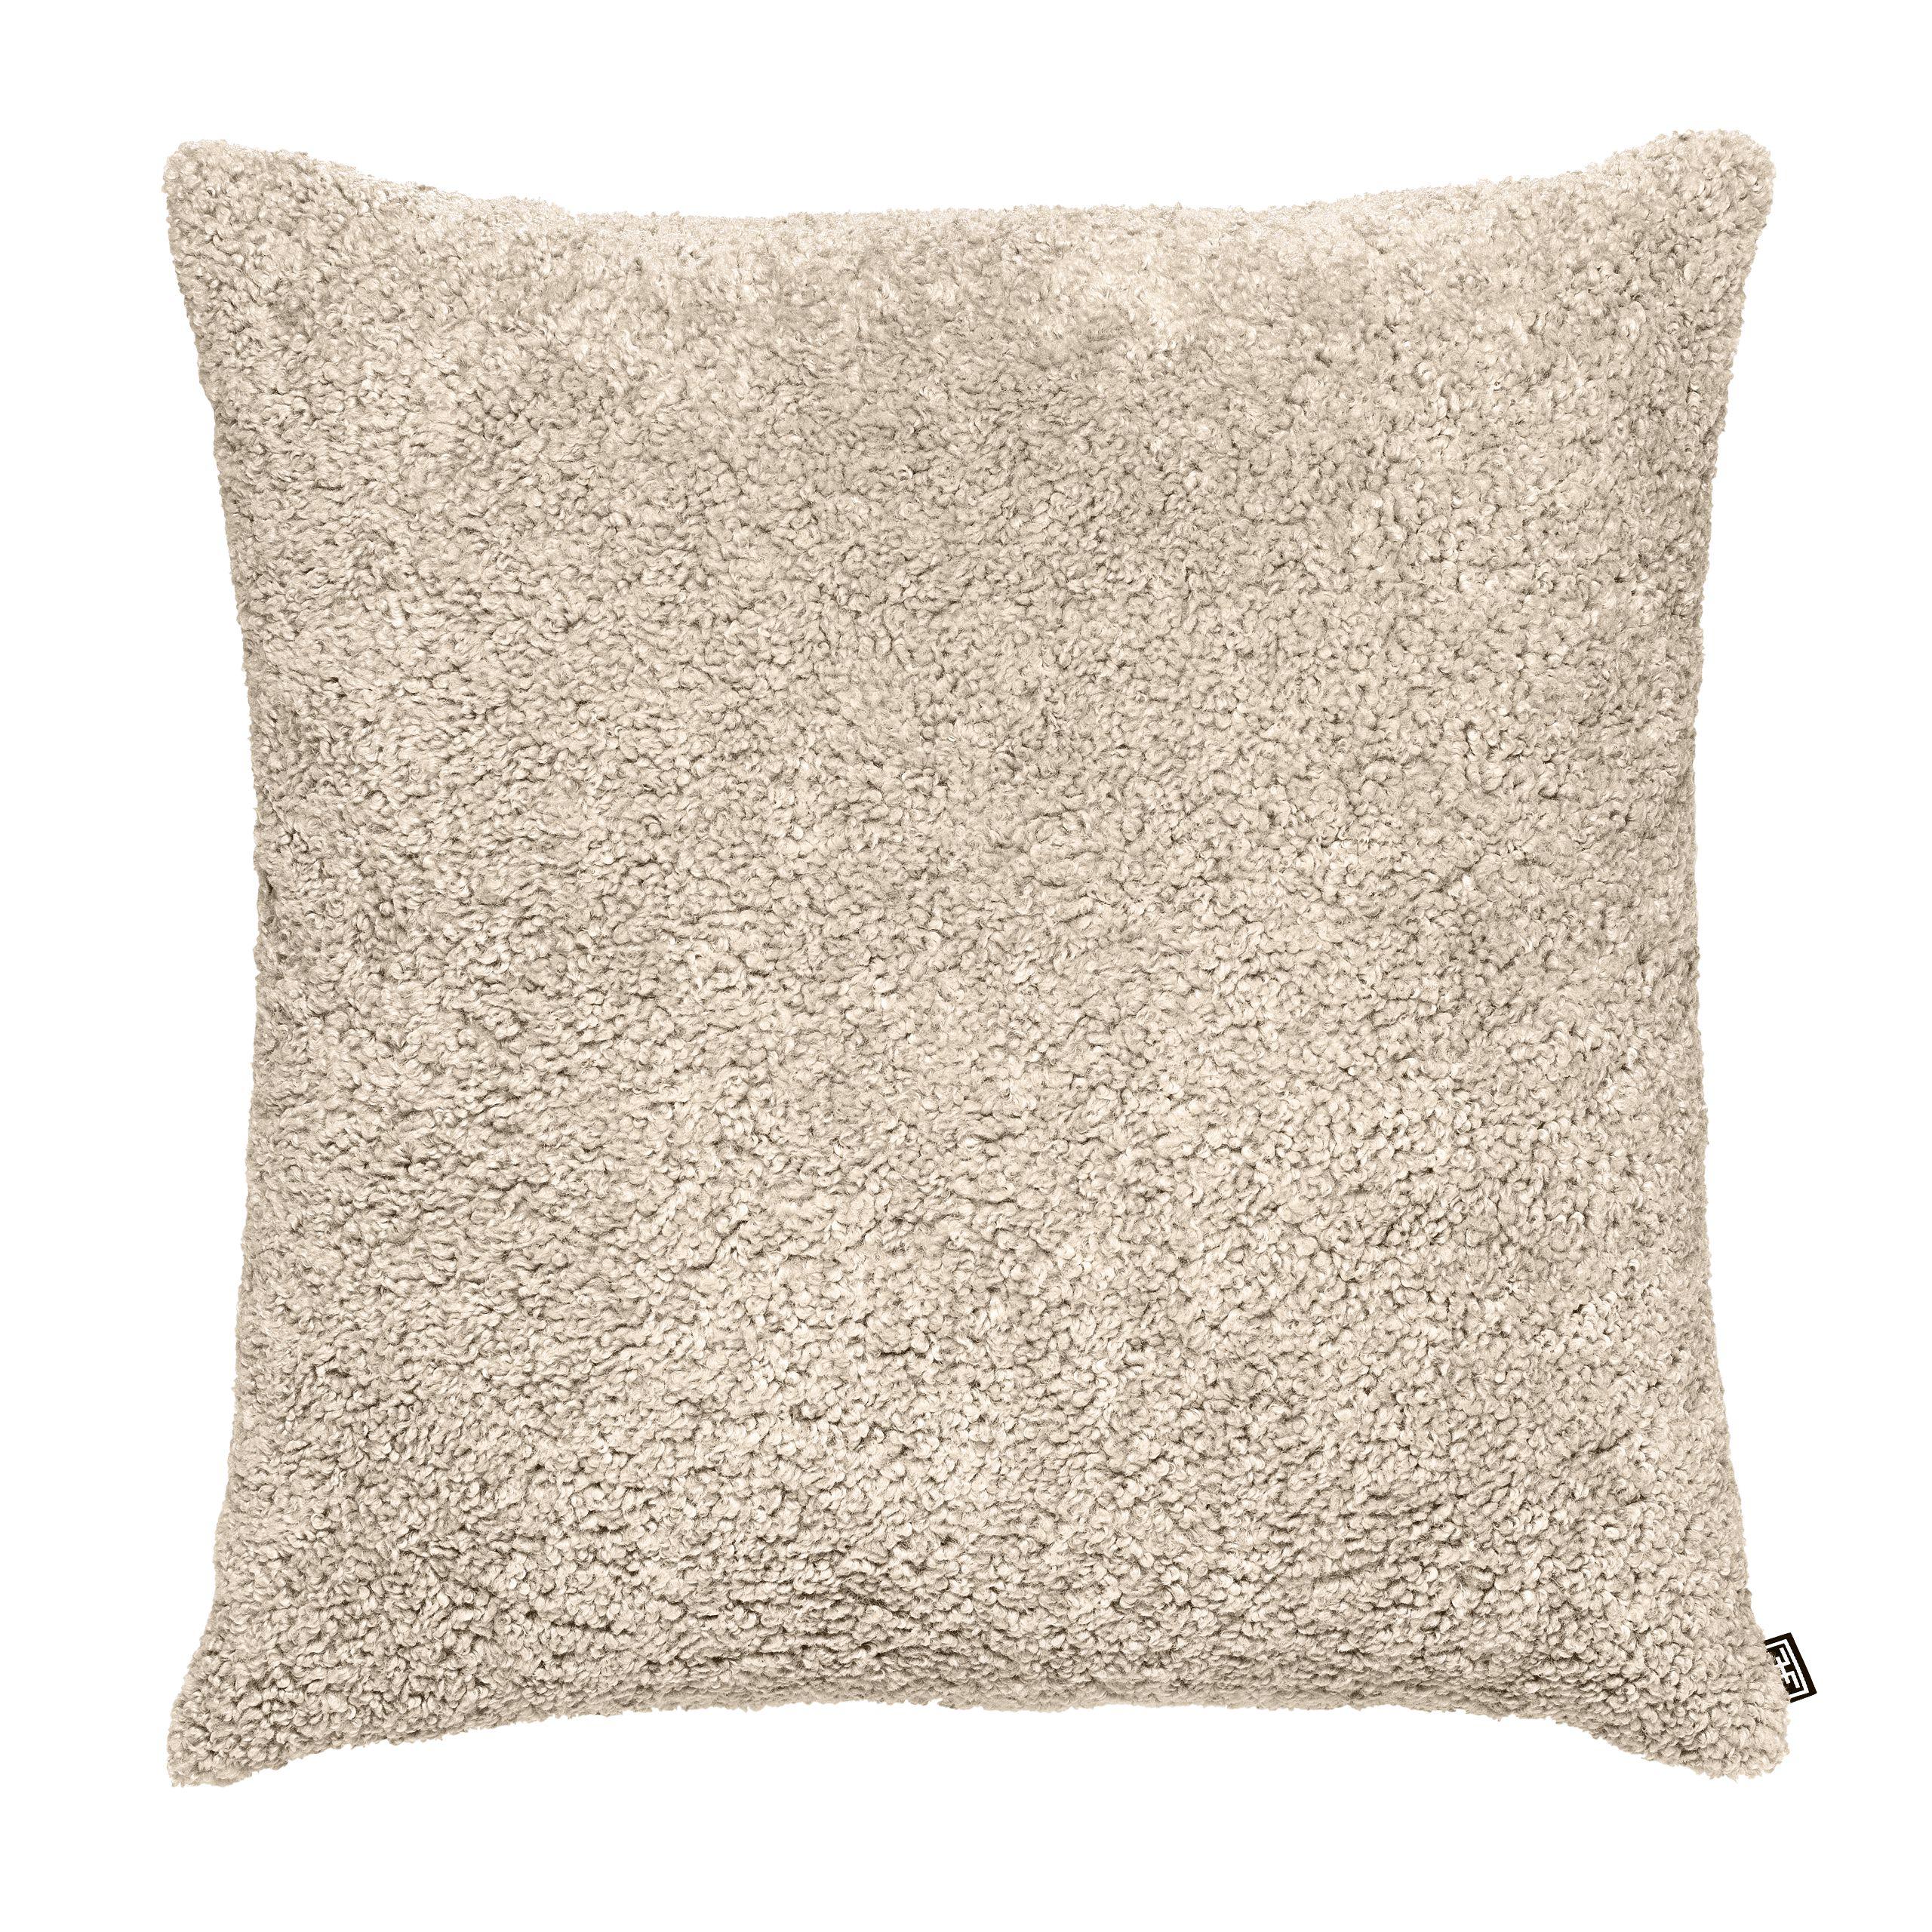 Купить Декоративная подушка Cushion Canberra в интернет-магазине roooms.ru